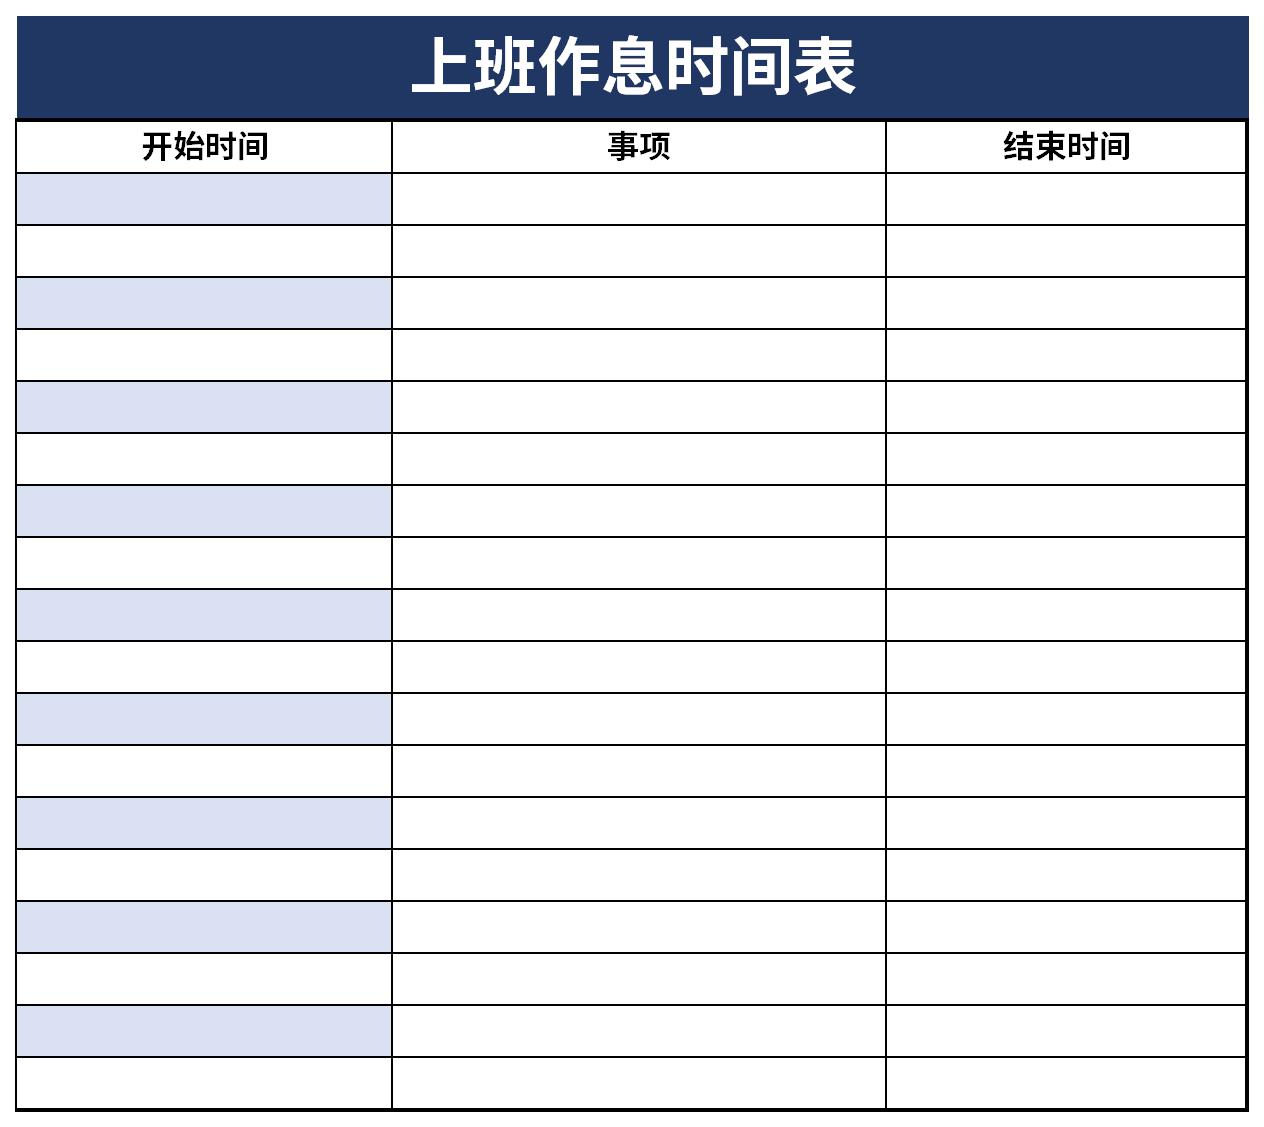 工作作息表下载 工作作息表格式下载 华军软件园